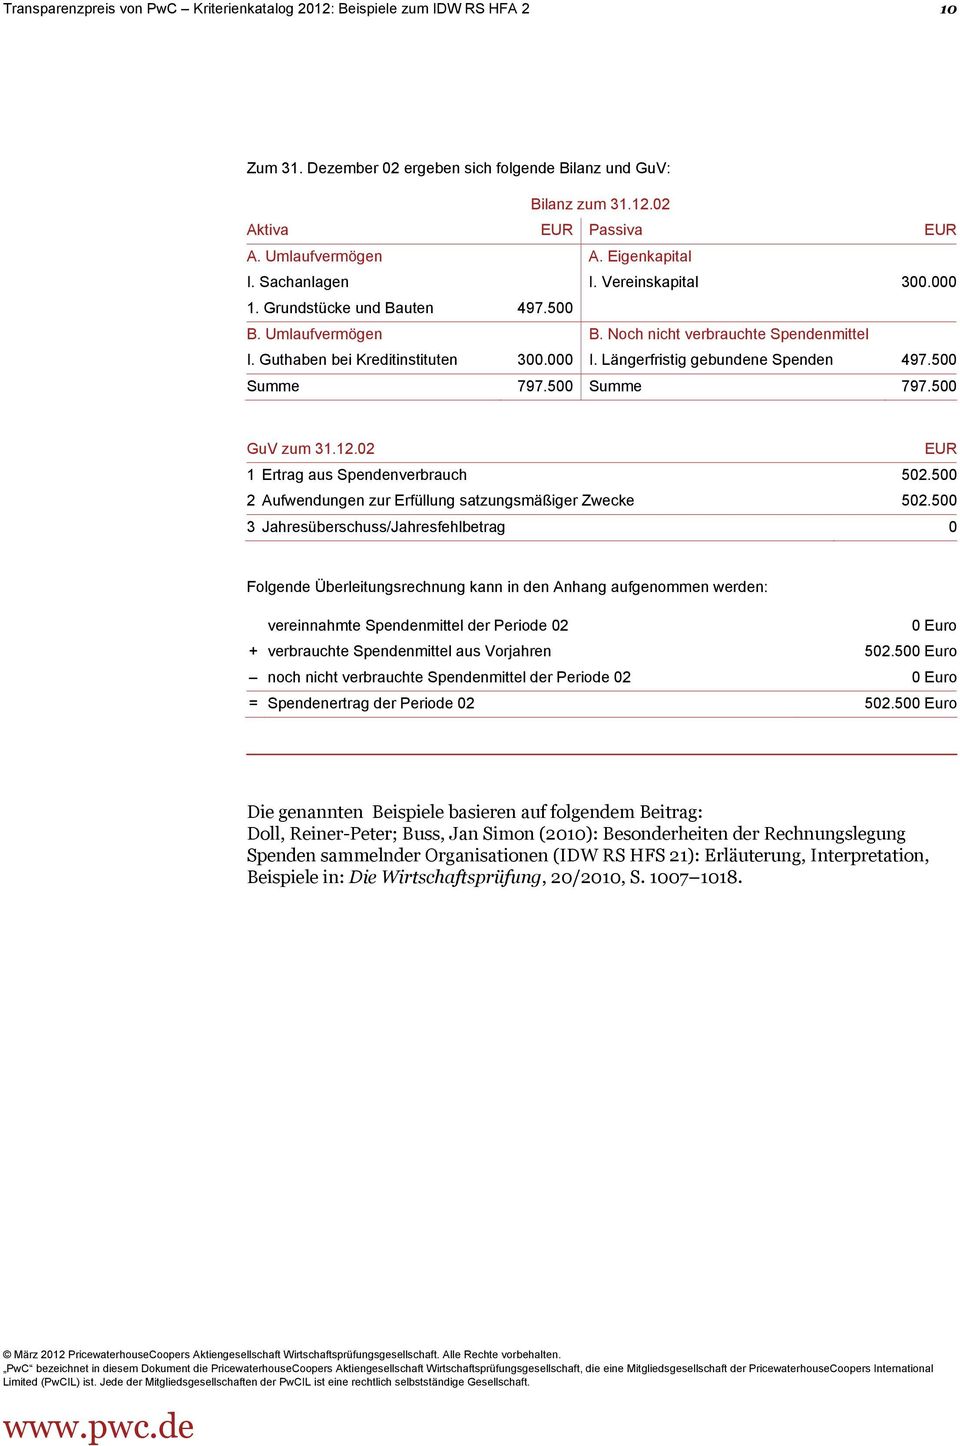 02 EUR 1 Ertrag aus Spendenverbrauch 502.500 2 Aufwendungen zur Erfüllung satzungsmäßiger Zwecke 502.